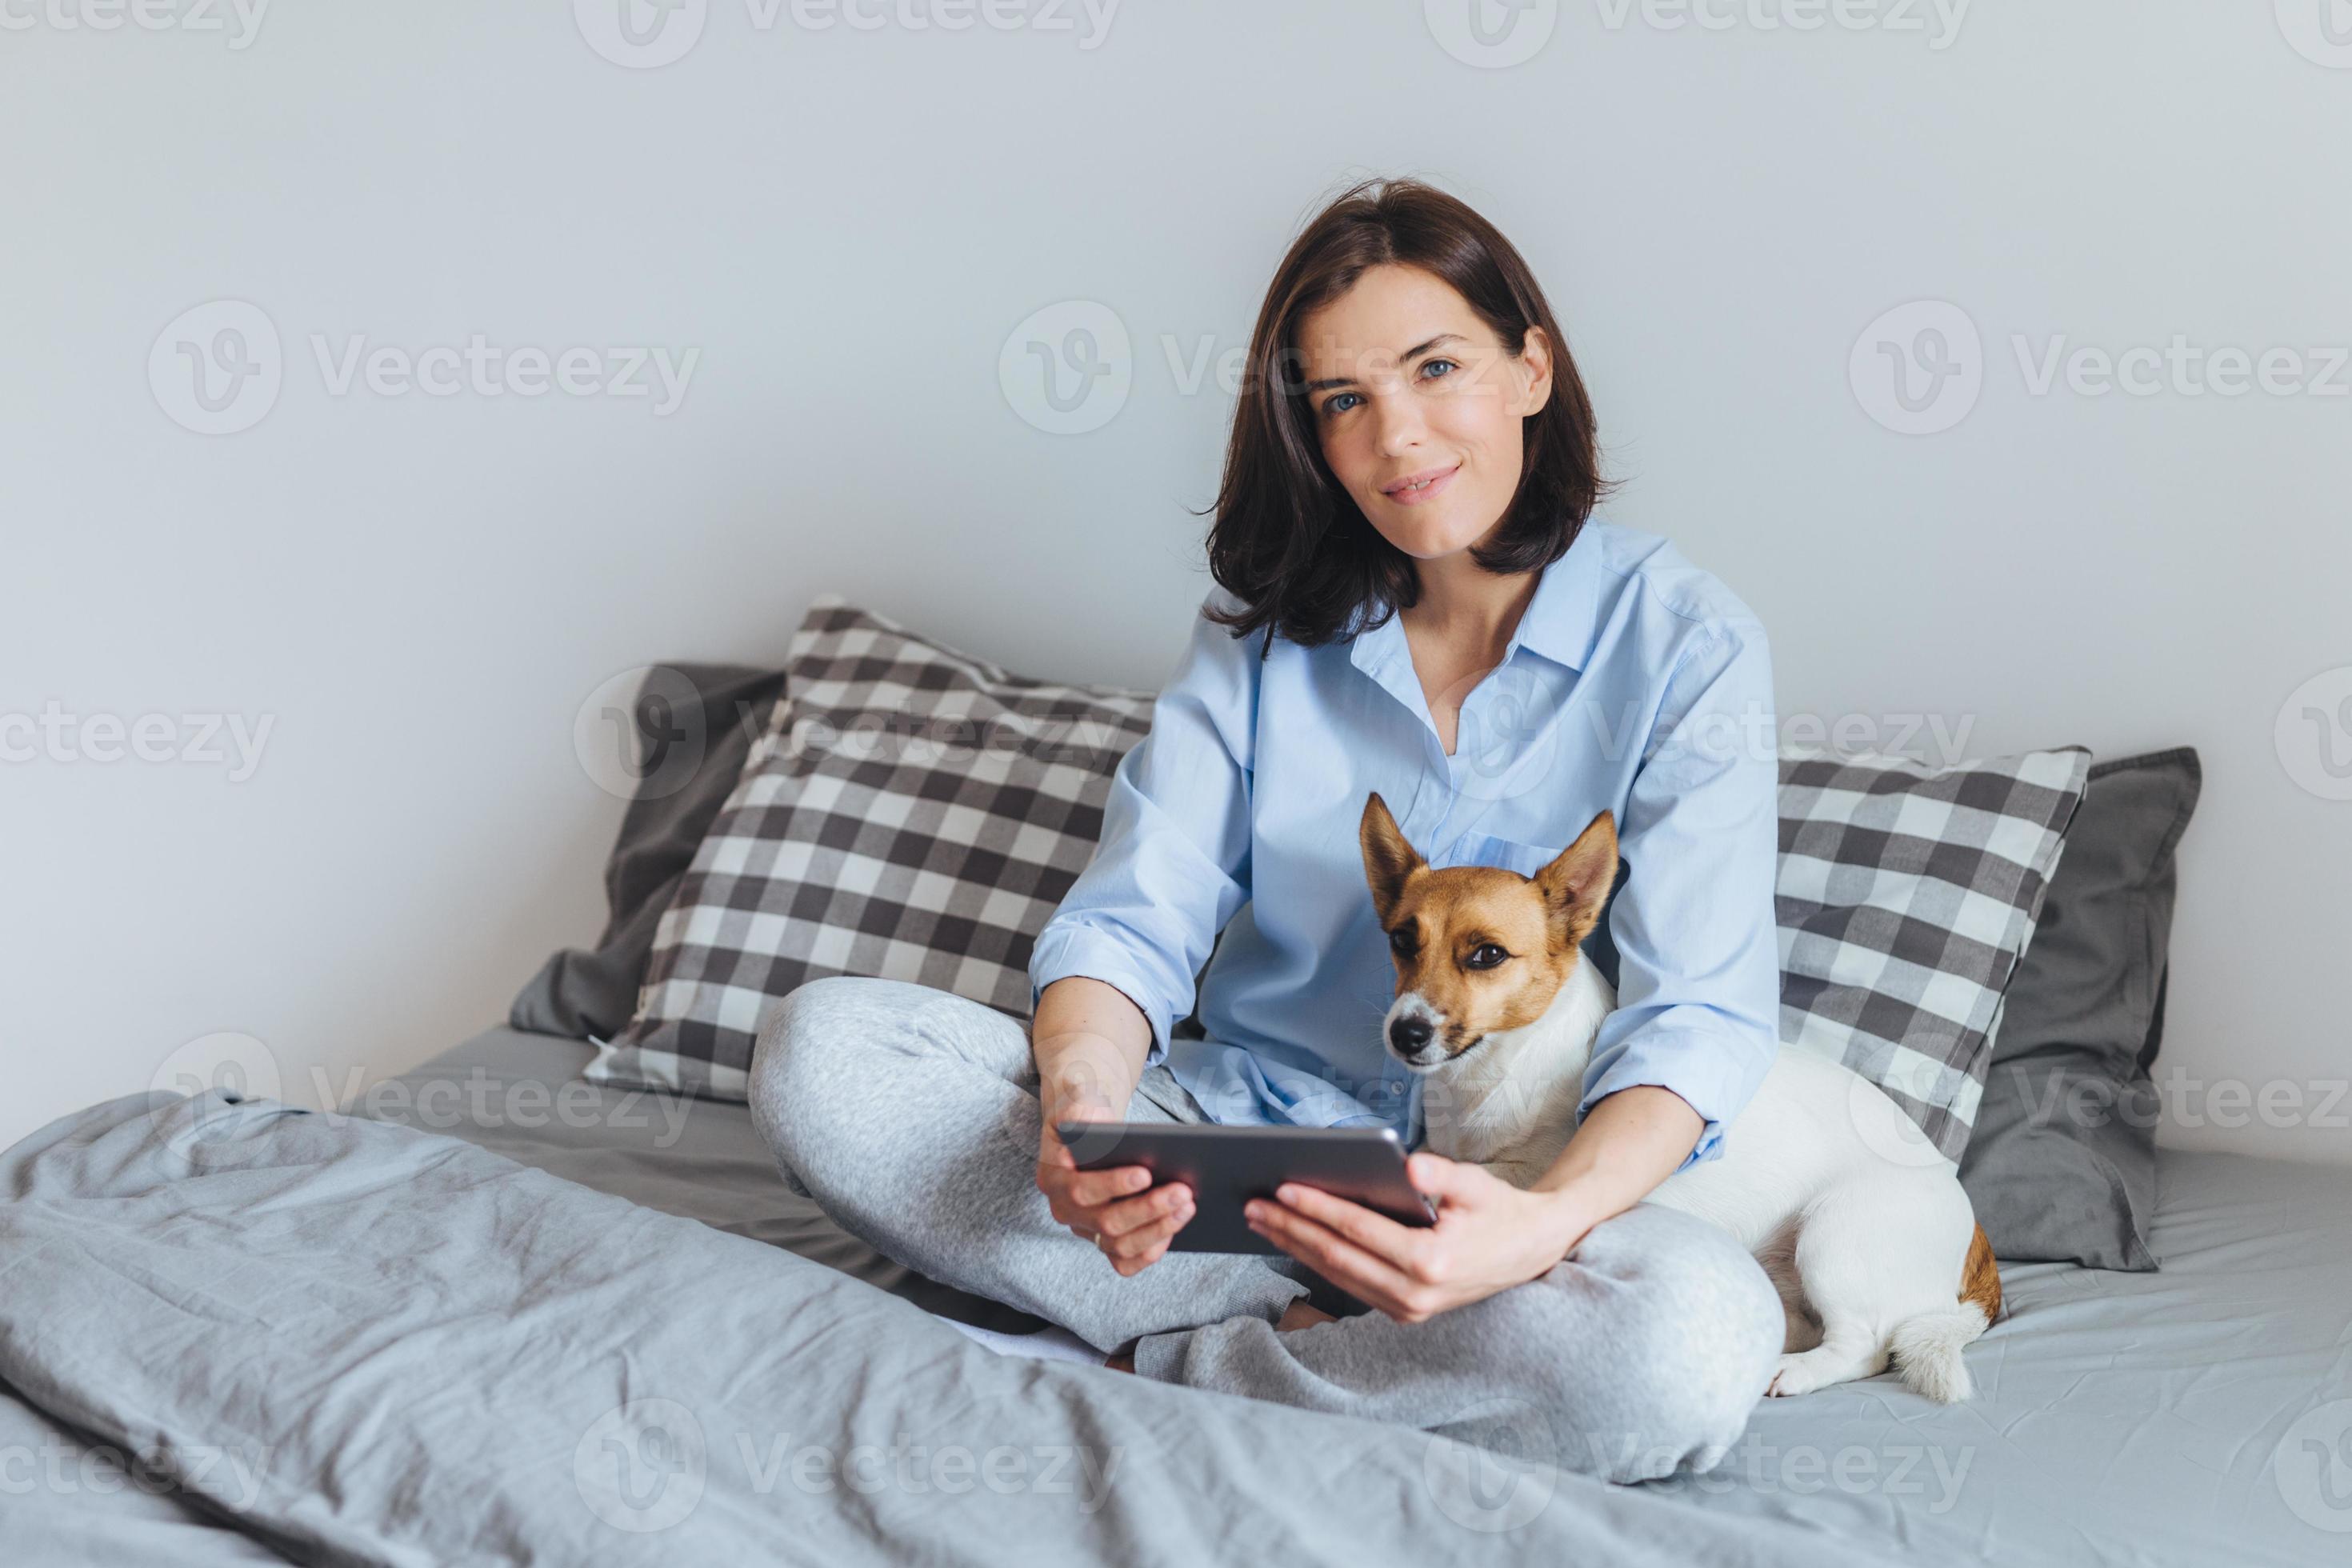 donna bruna dall'aspetto piacevole in pigiama usa gadget elettronici  moderni in camera da letto sul letto, si siede con il suo cane jack russell  terrier, gode di una calma atmosfera domestica, ha